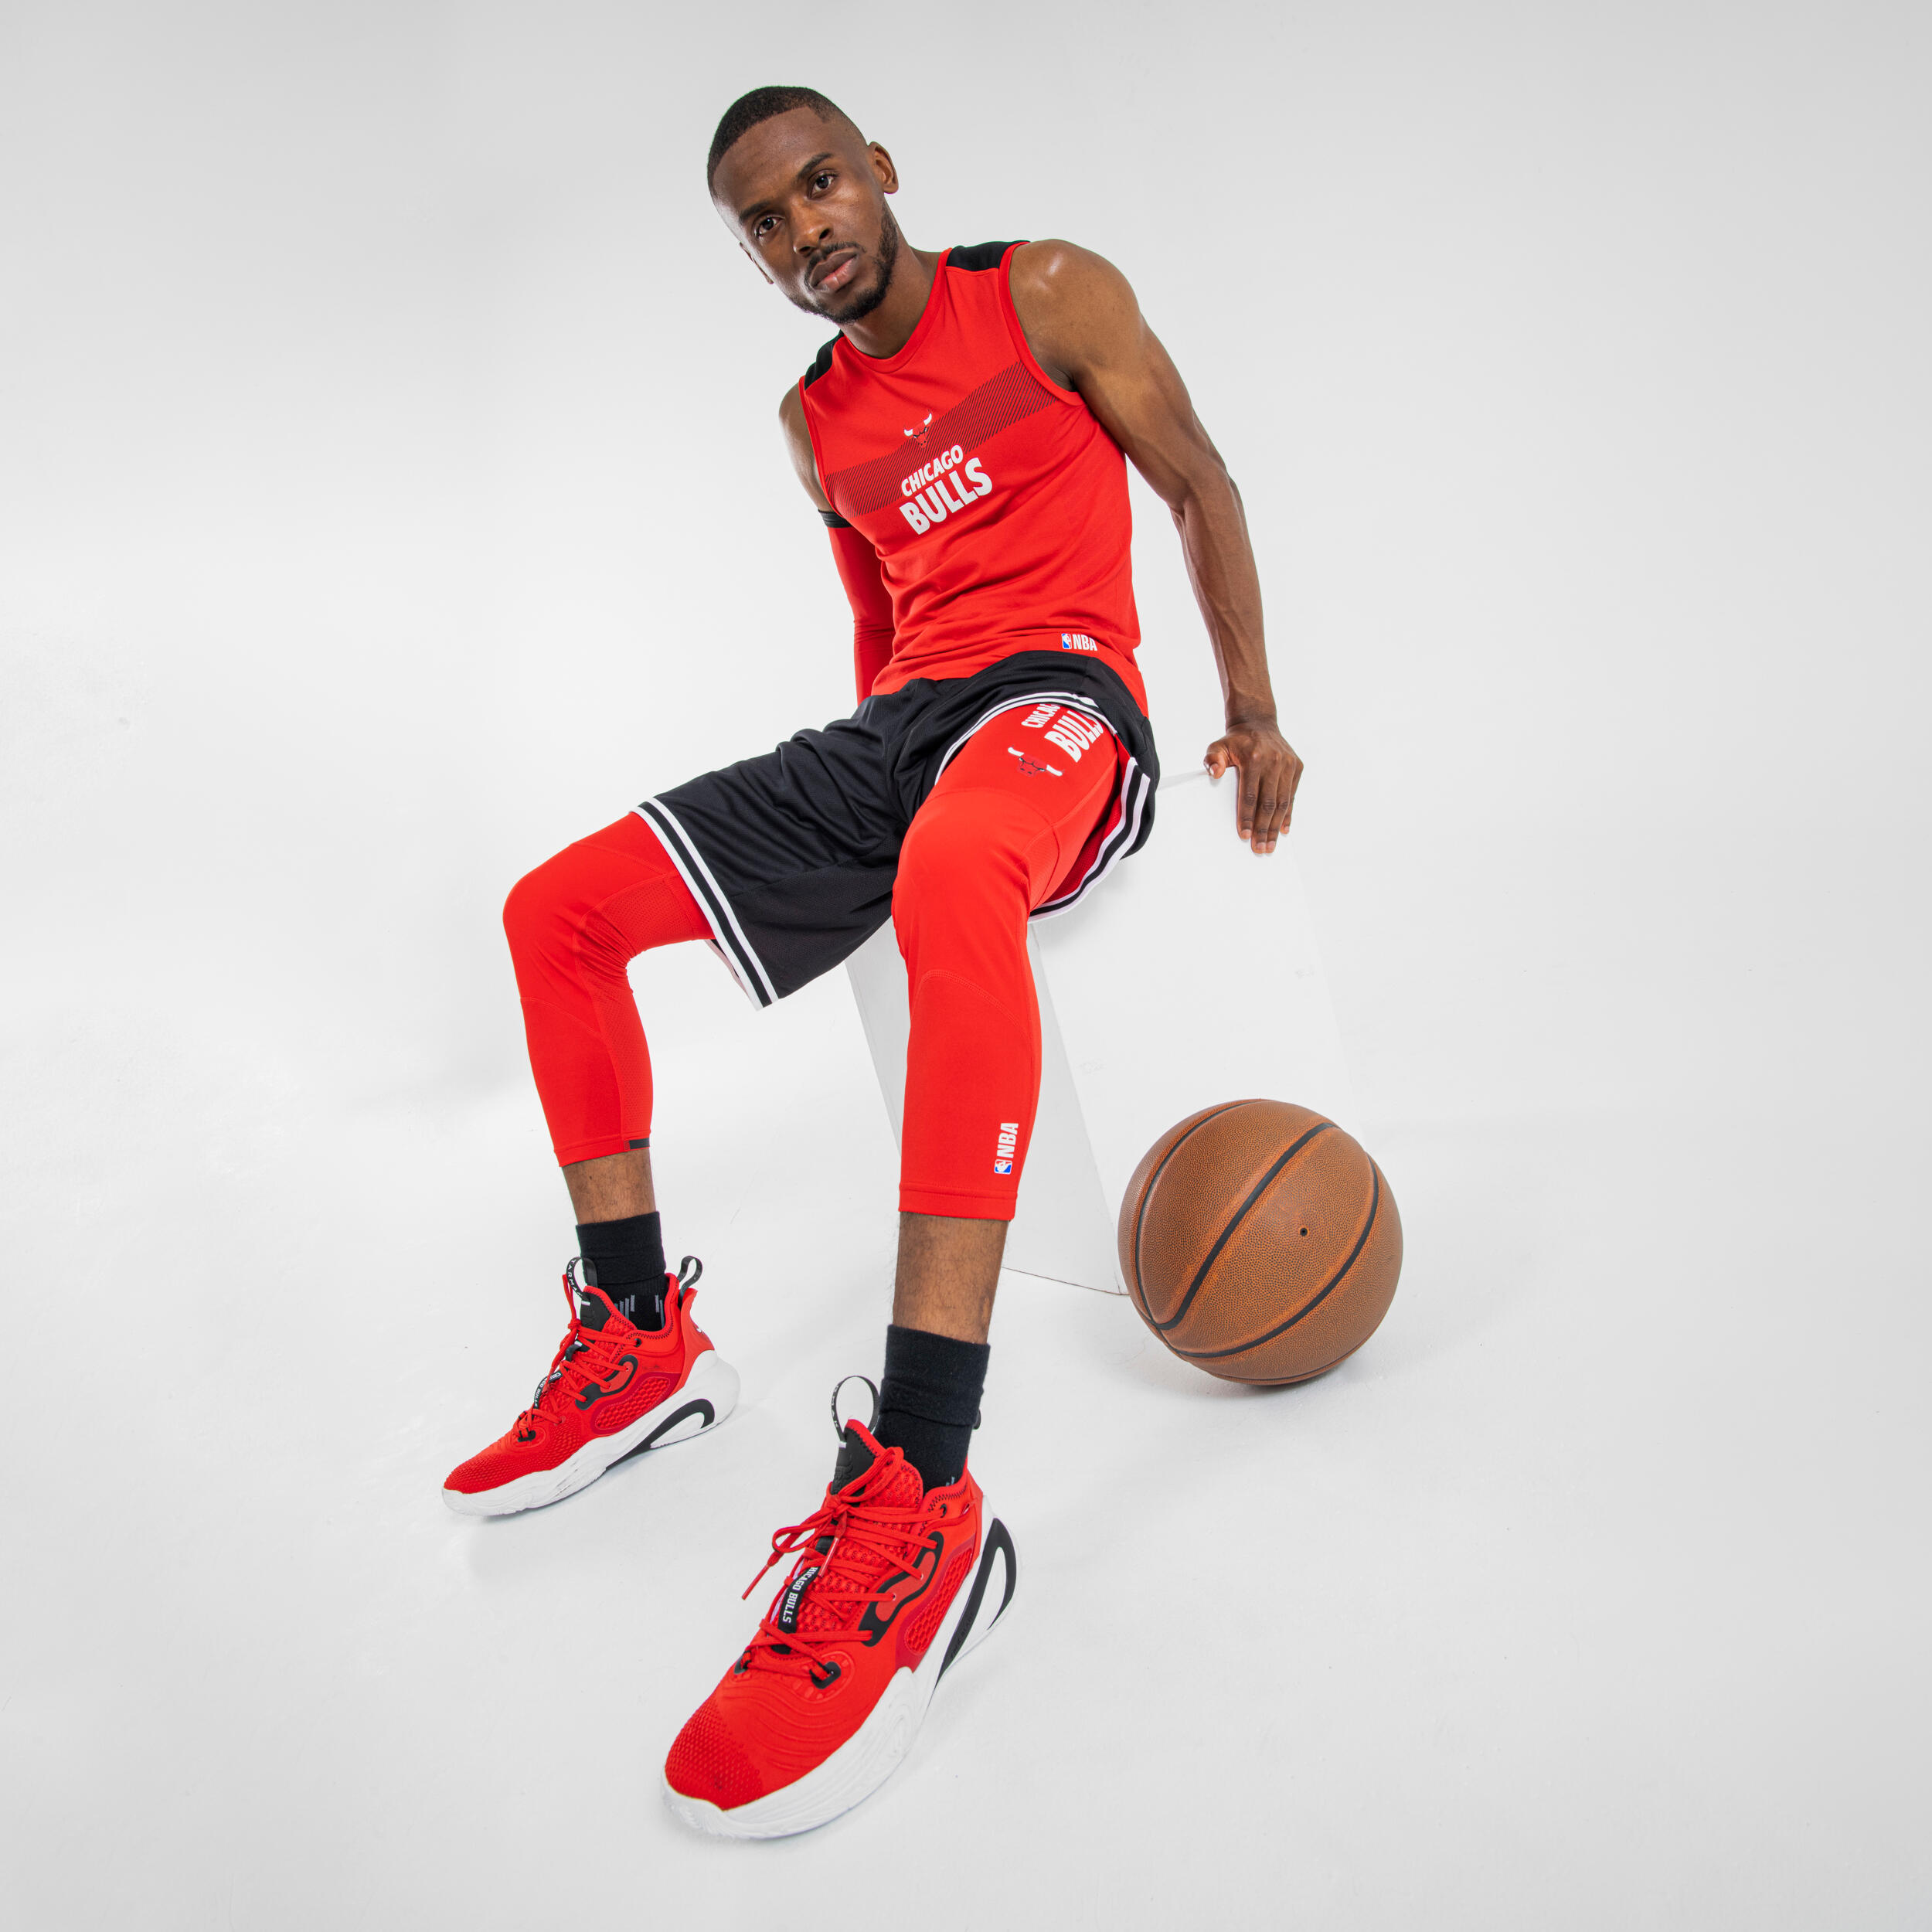 Men's/Women's Basketball Shoes SE900 - Red/NBA Chicago Bulls 8/10